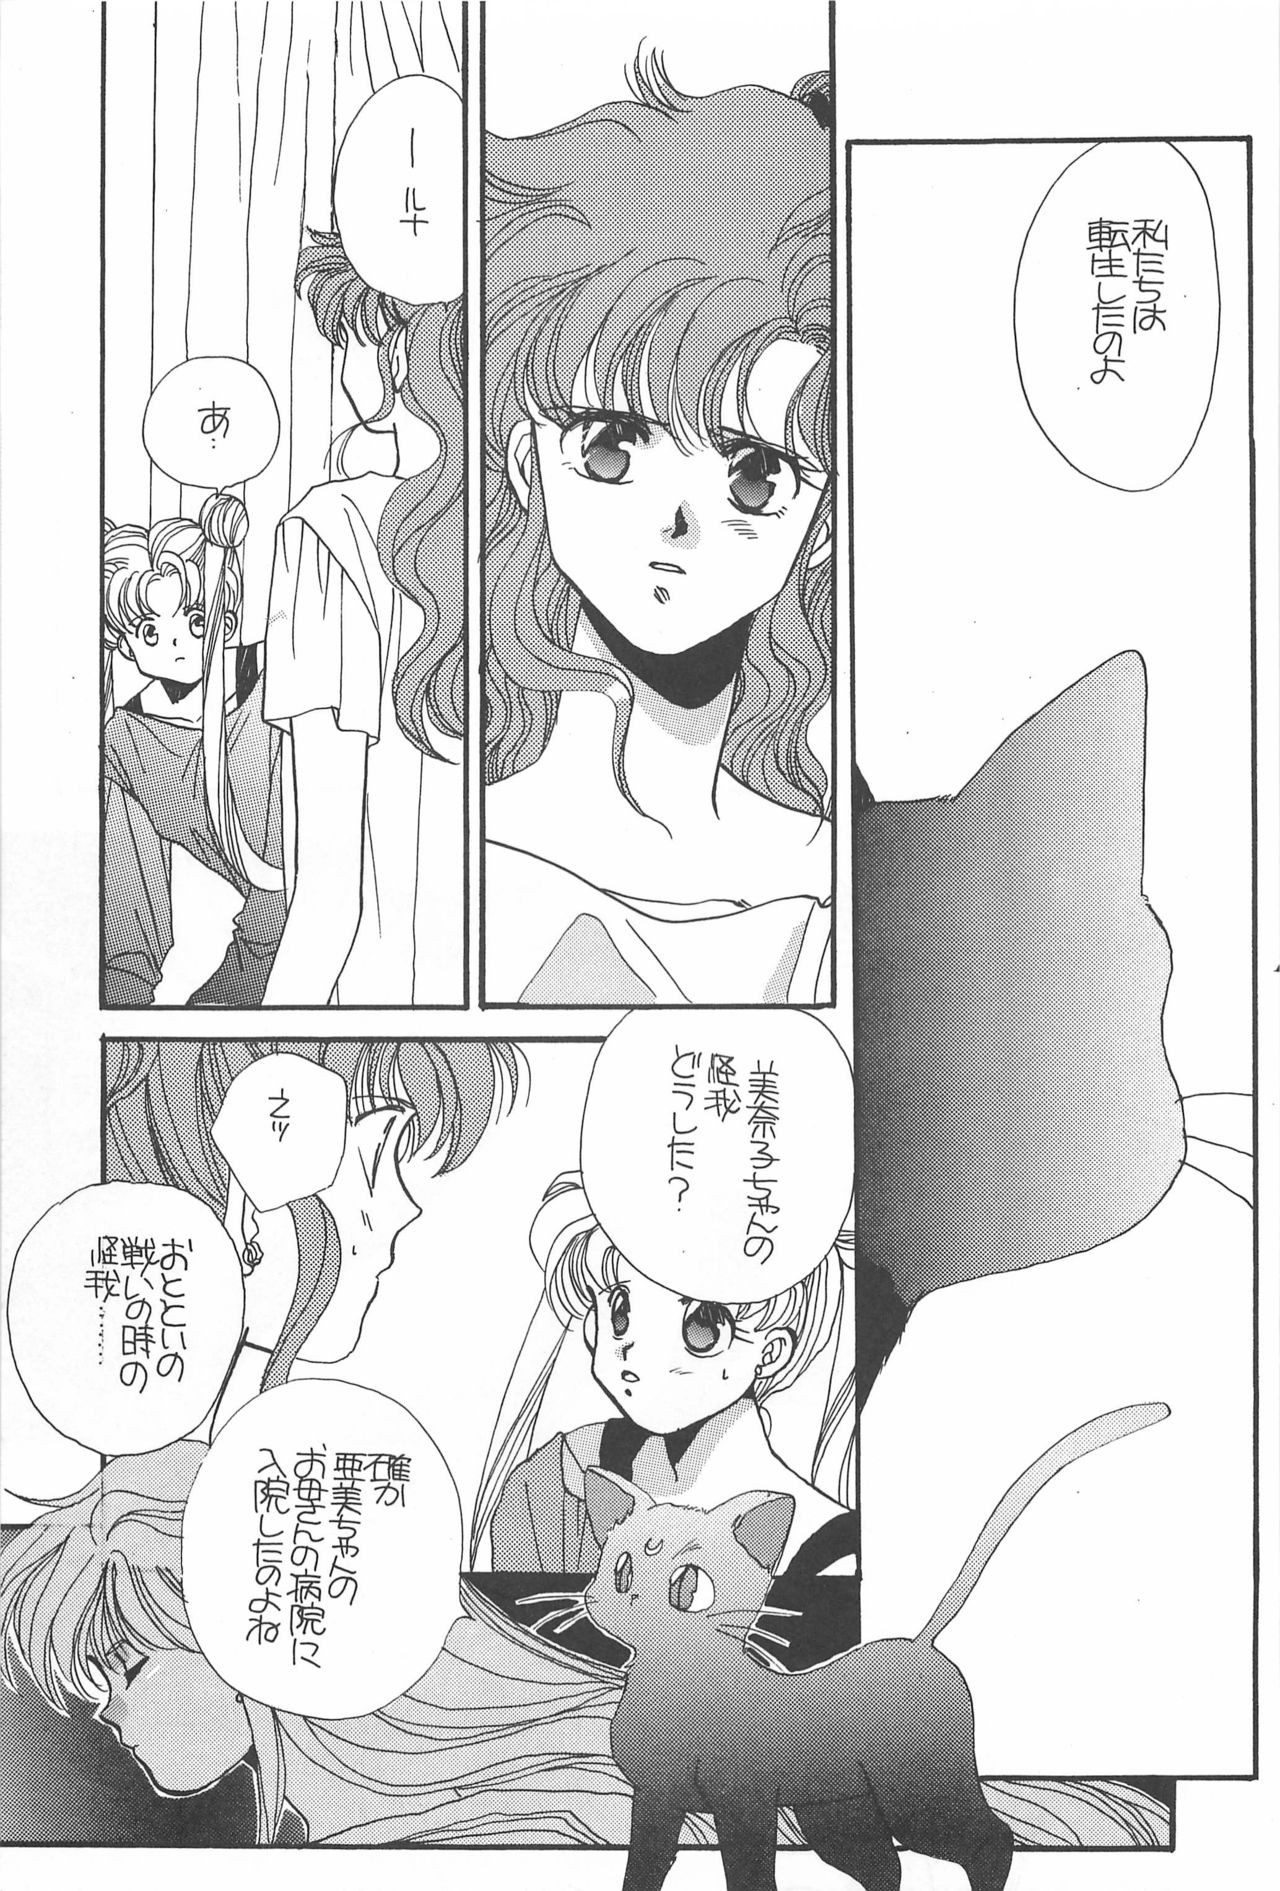 [Hello World (Muttri Moony)] Kaze no You ni Yume no You ni - Sailor Moon Collection (Sailor Moon) 156